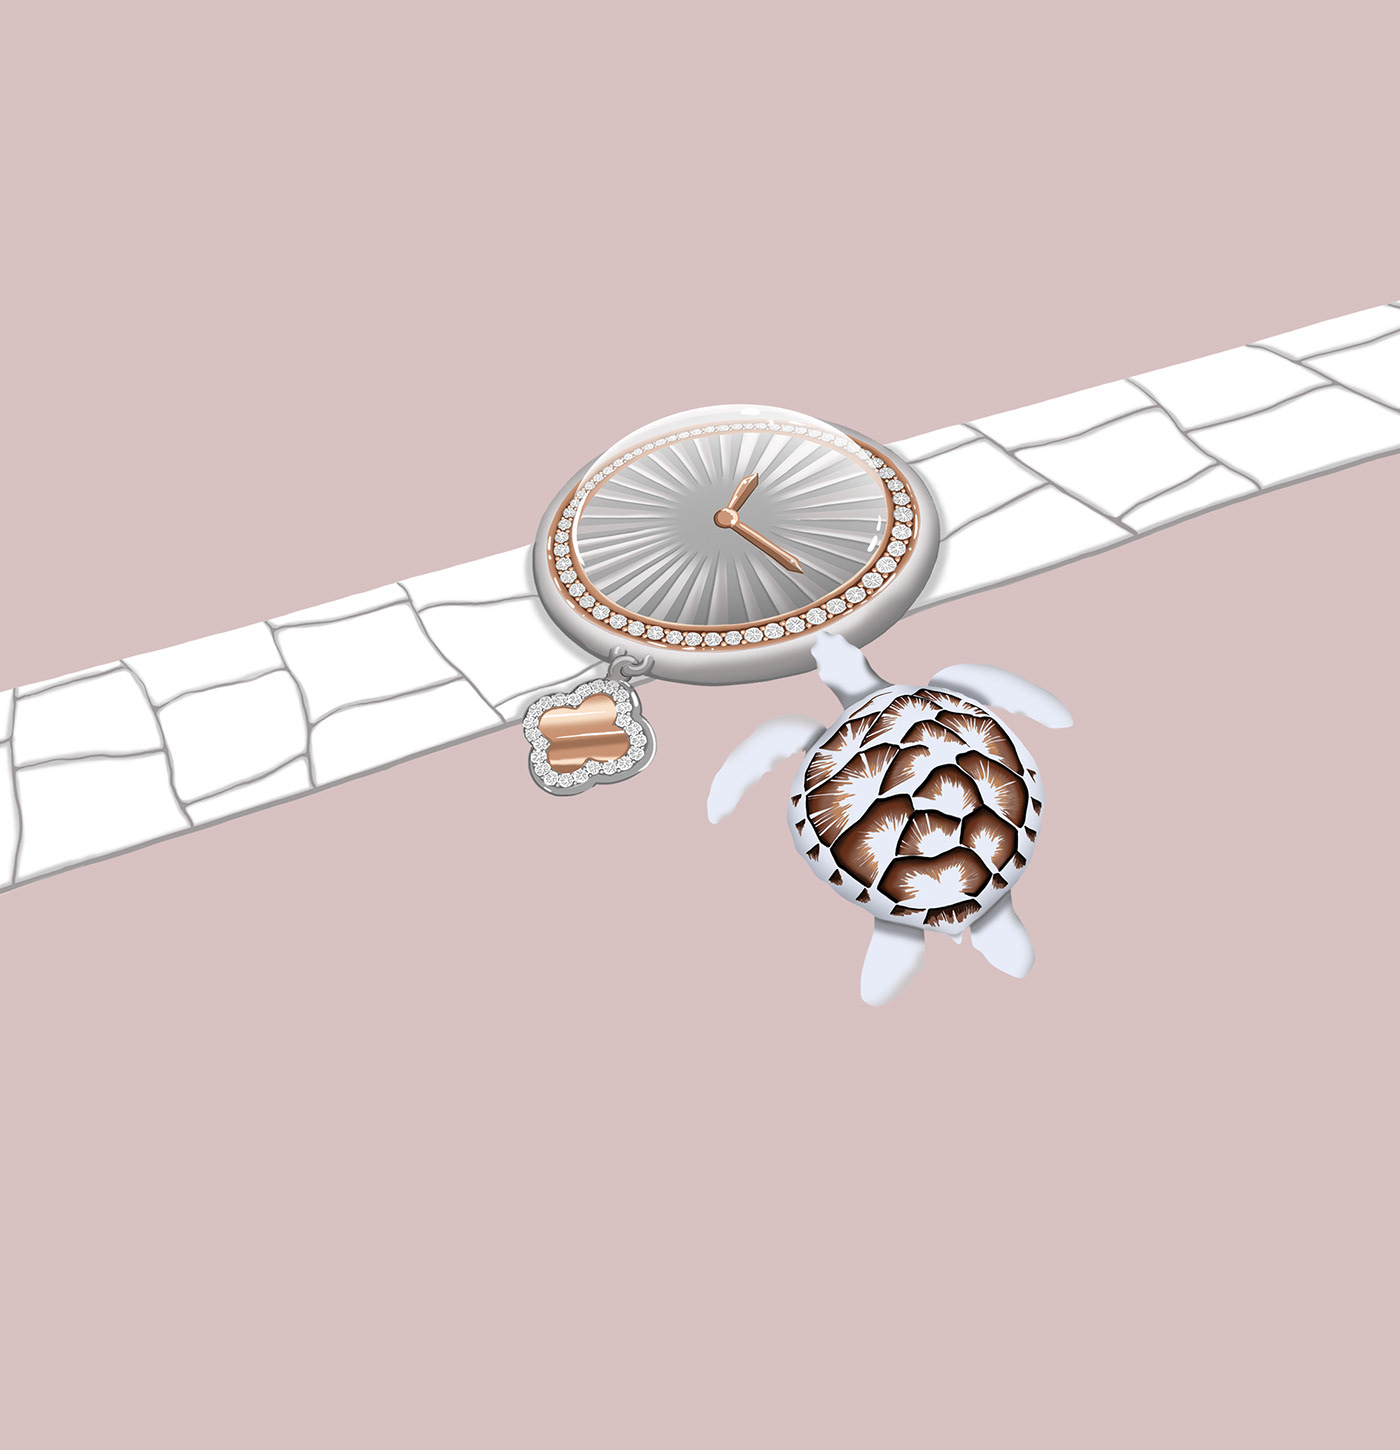 Digital Art  digital illustration Drawing  ILLUSTRATION  Illustrator Jewellery jewelry luxury Van Cleef & Arpels vancleef&arpels